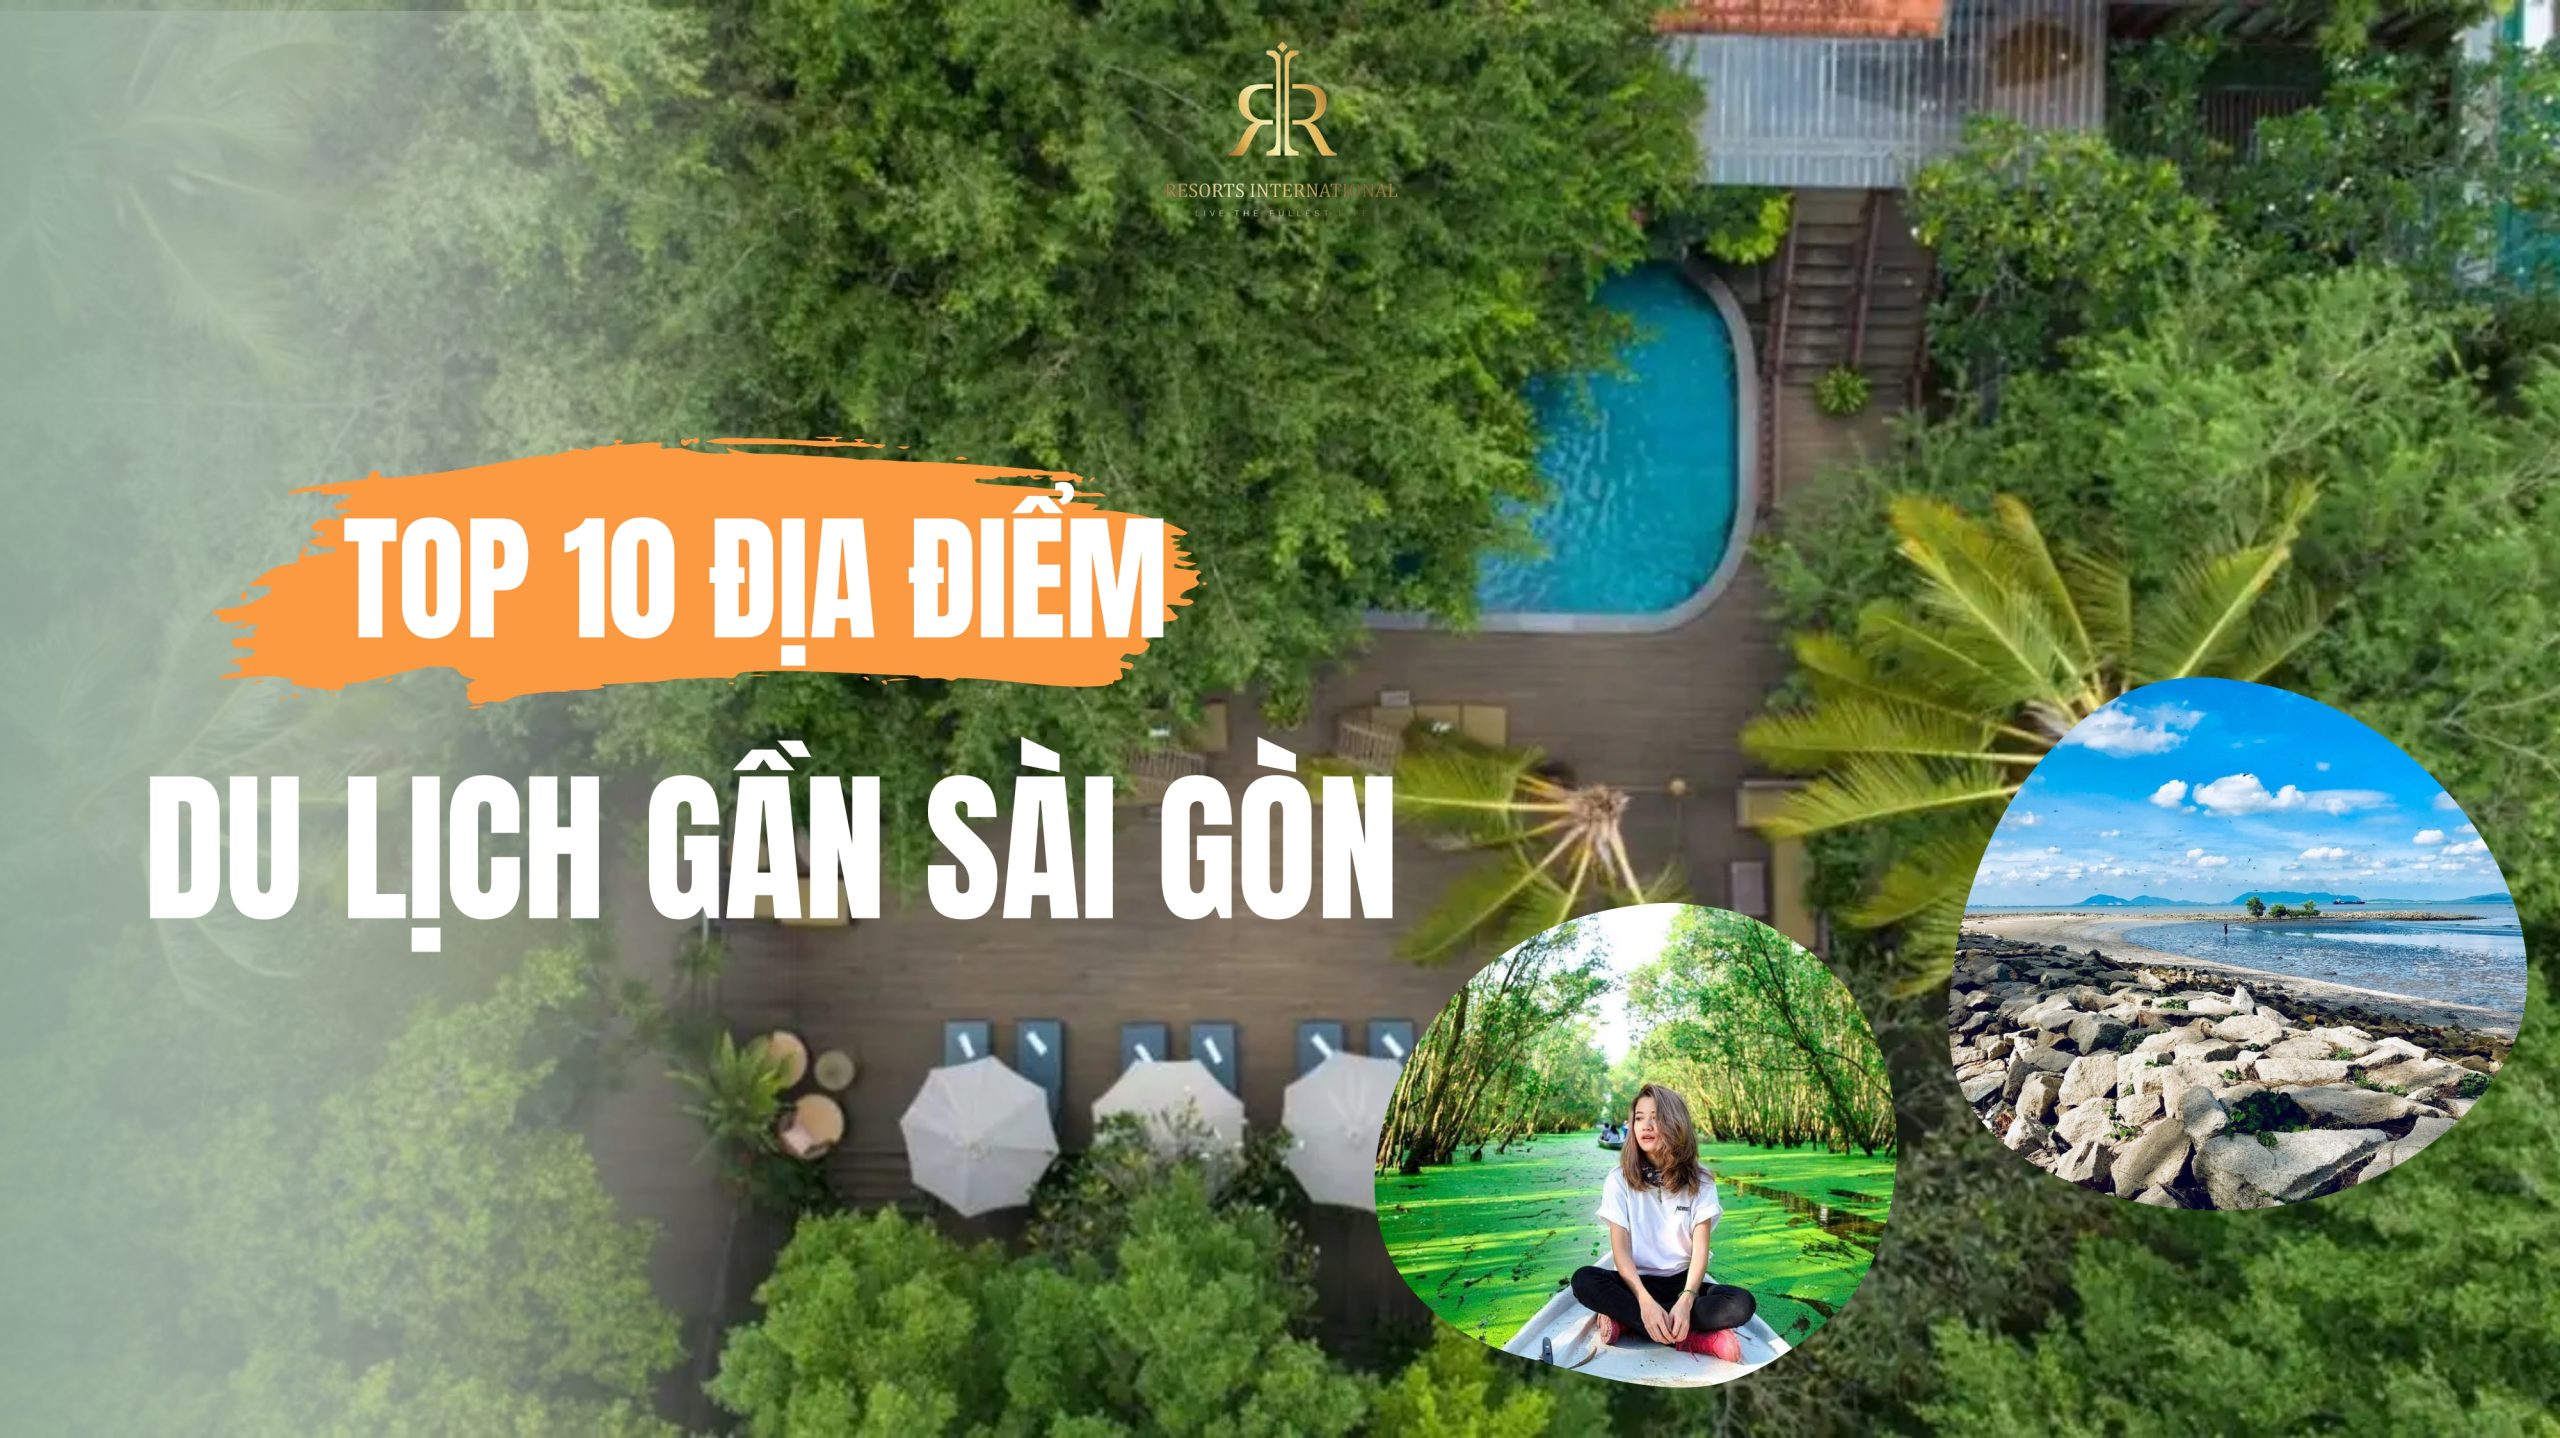 Du lịch gần Sài Gòn: 10 địa điểm nhất định phải đi